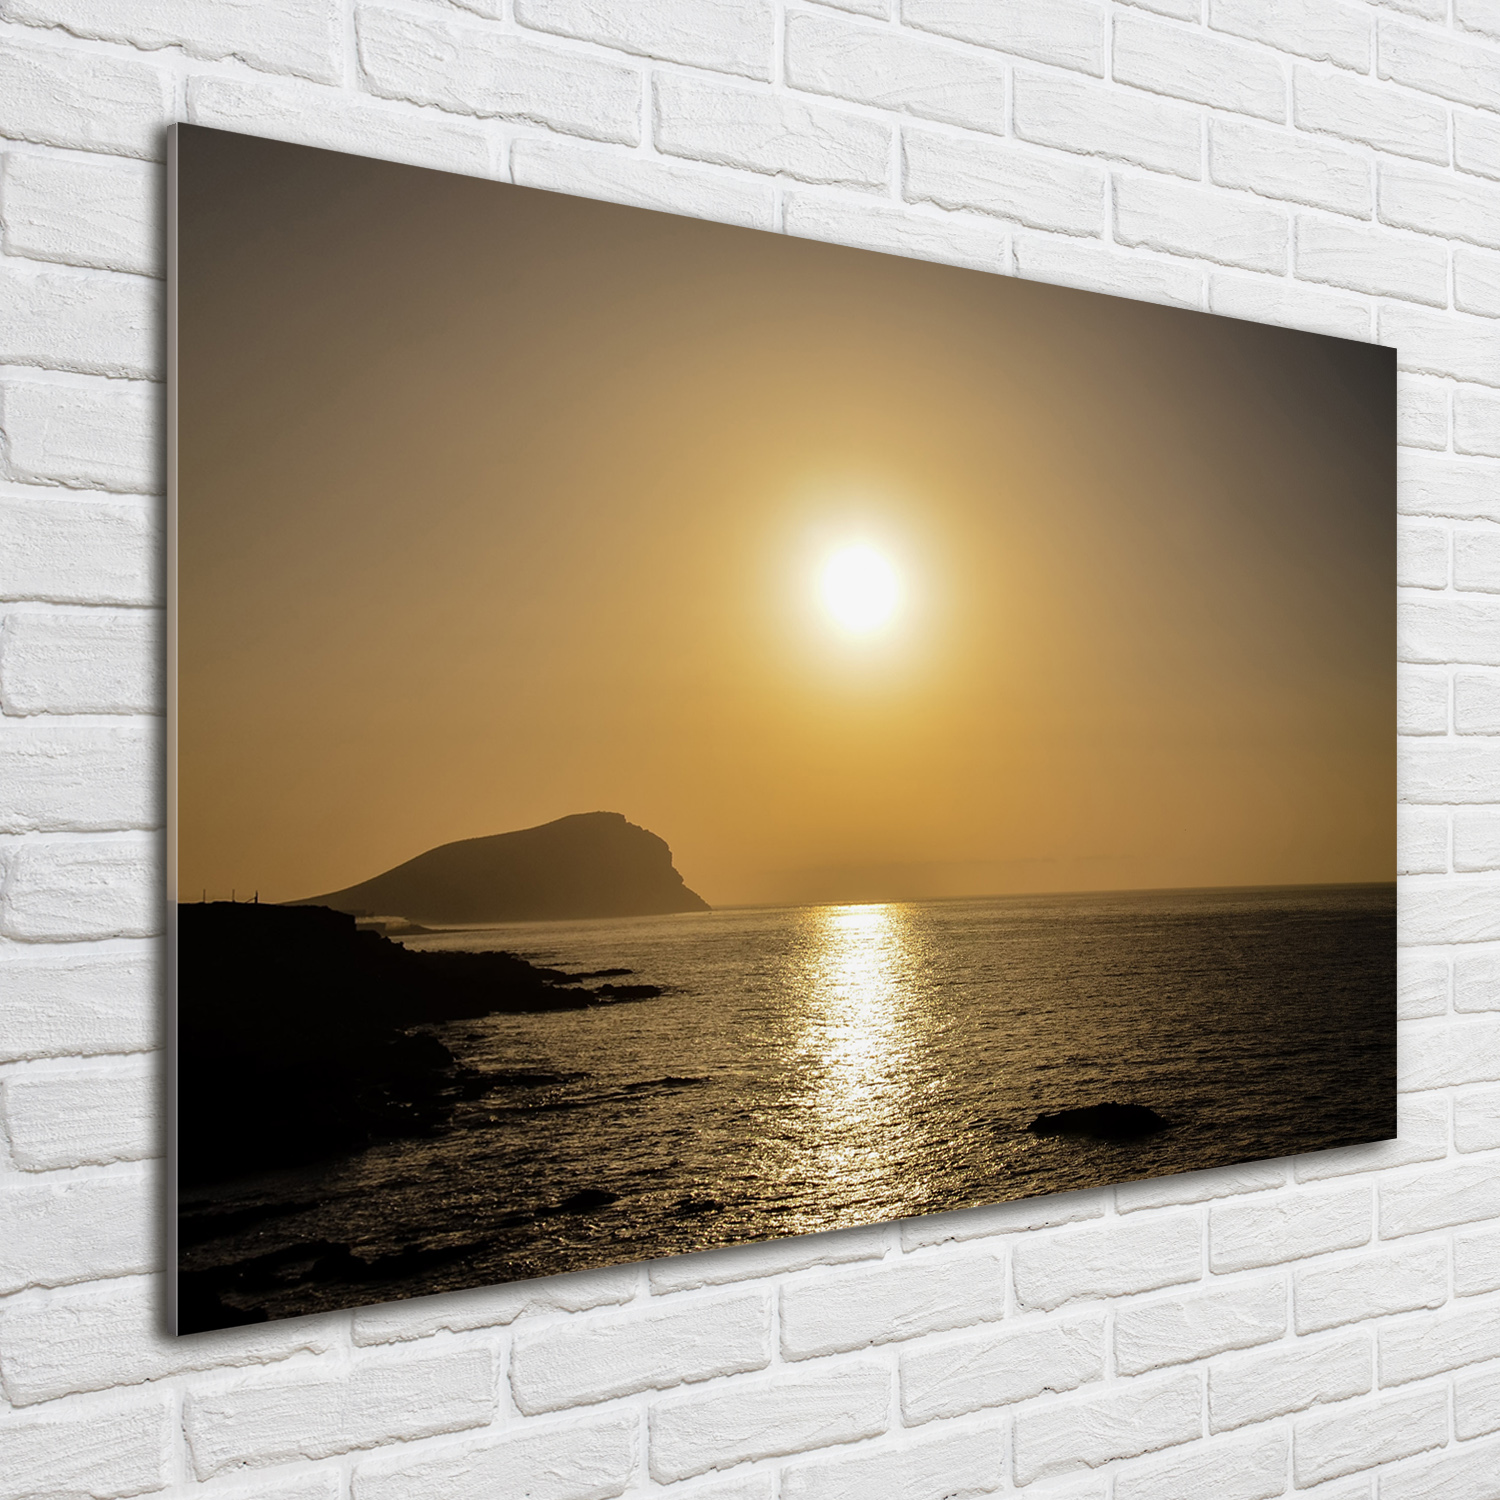 Glas-Bild Wandbilder Druck auf Glas 100x70 Landschaften Sonnenuntergang Meer